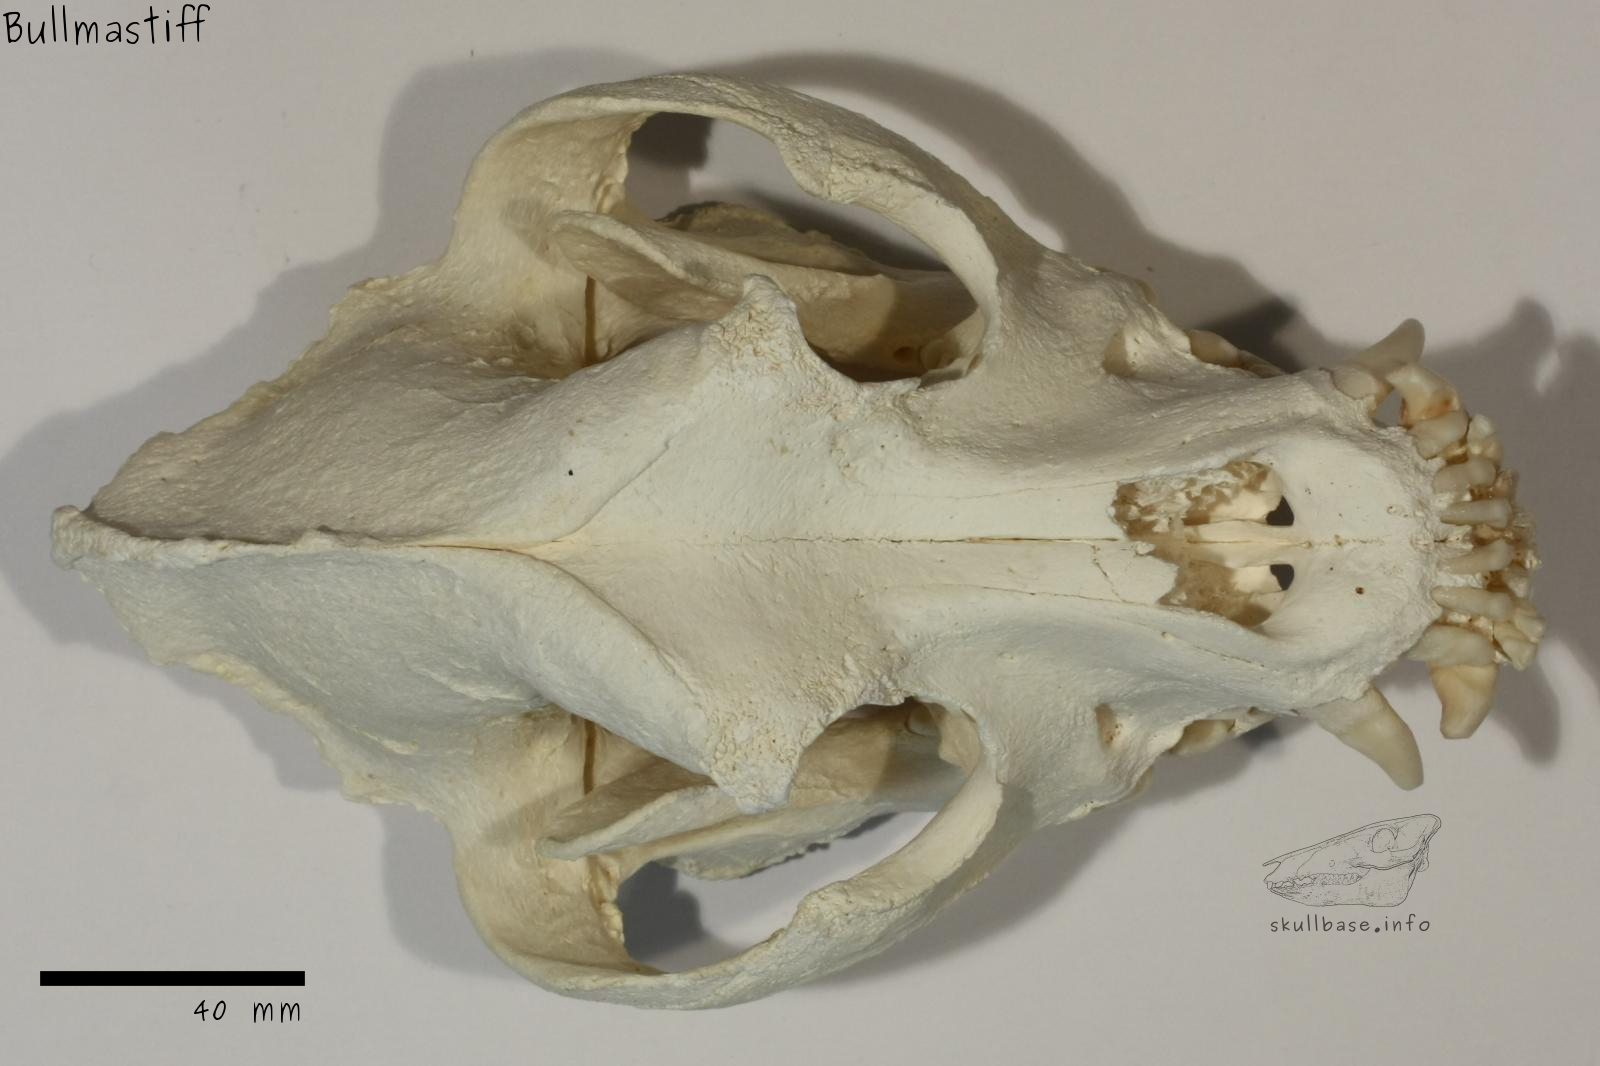 Bullmastiff (Canis lupus familiaris) skull dorsal view